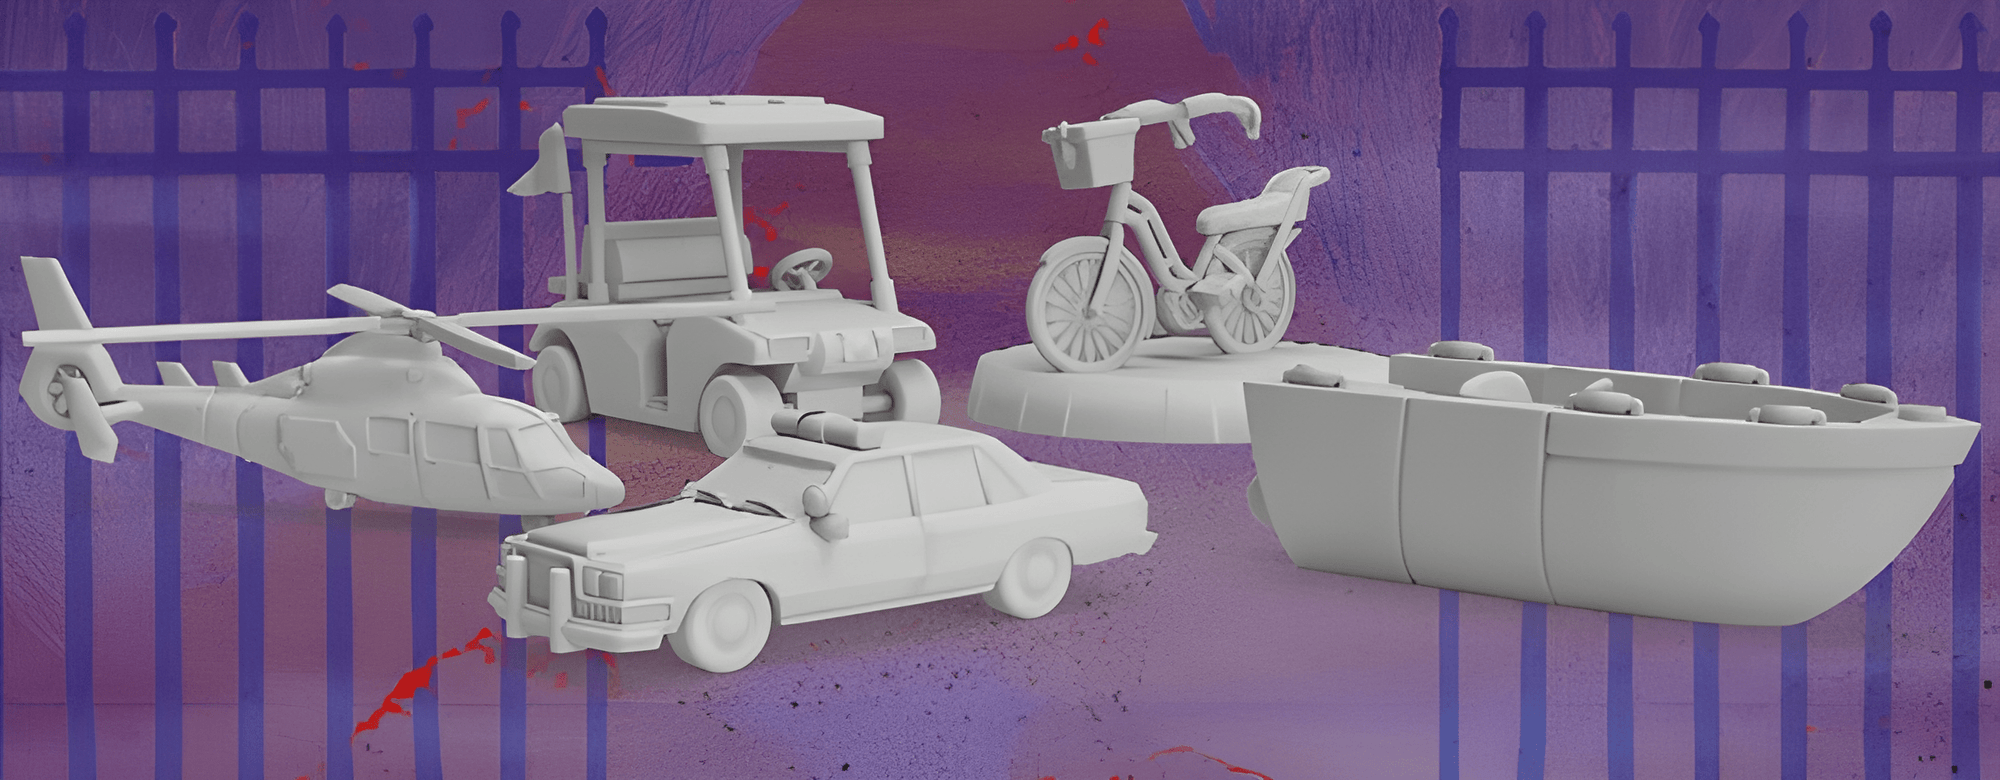 Τελικό κορίτσι: Μινιατούρα οχήματος [Σειρά 1] (Kickstarter Pre-Order Special) Accessory Game Kickstarter Van Ryder Games KS001081P